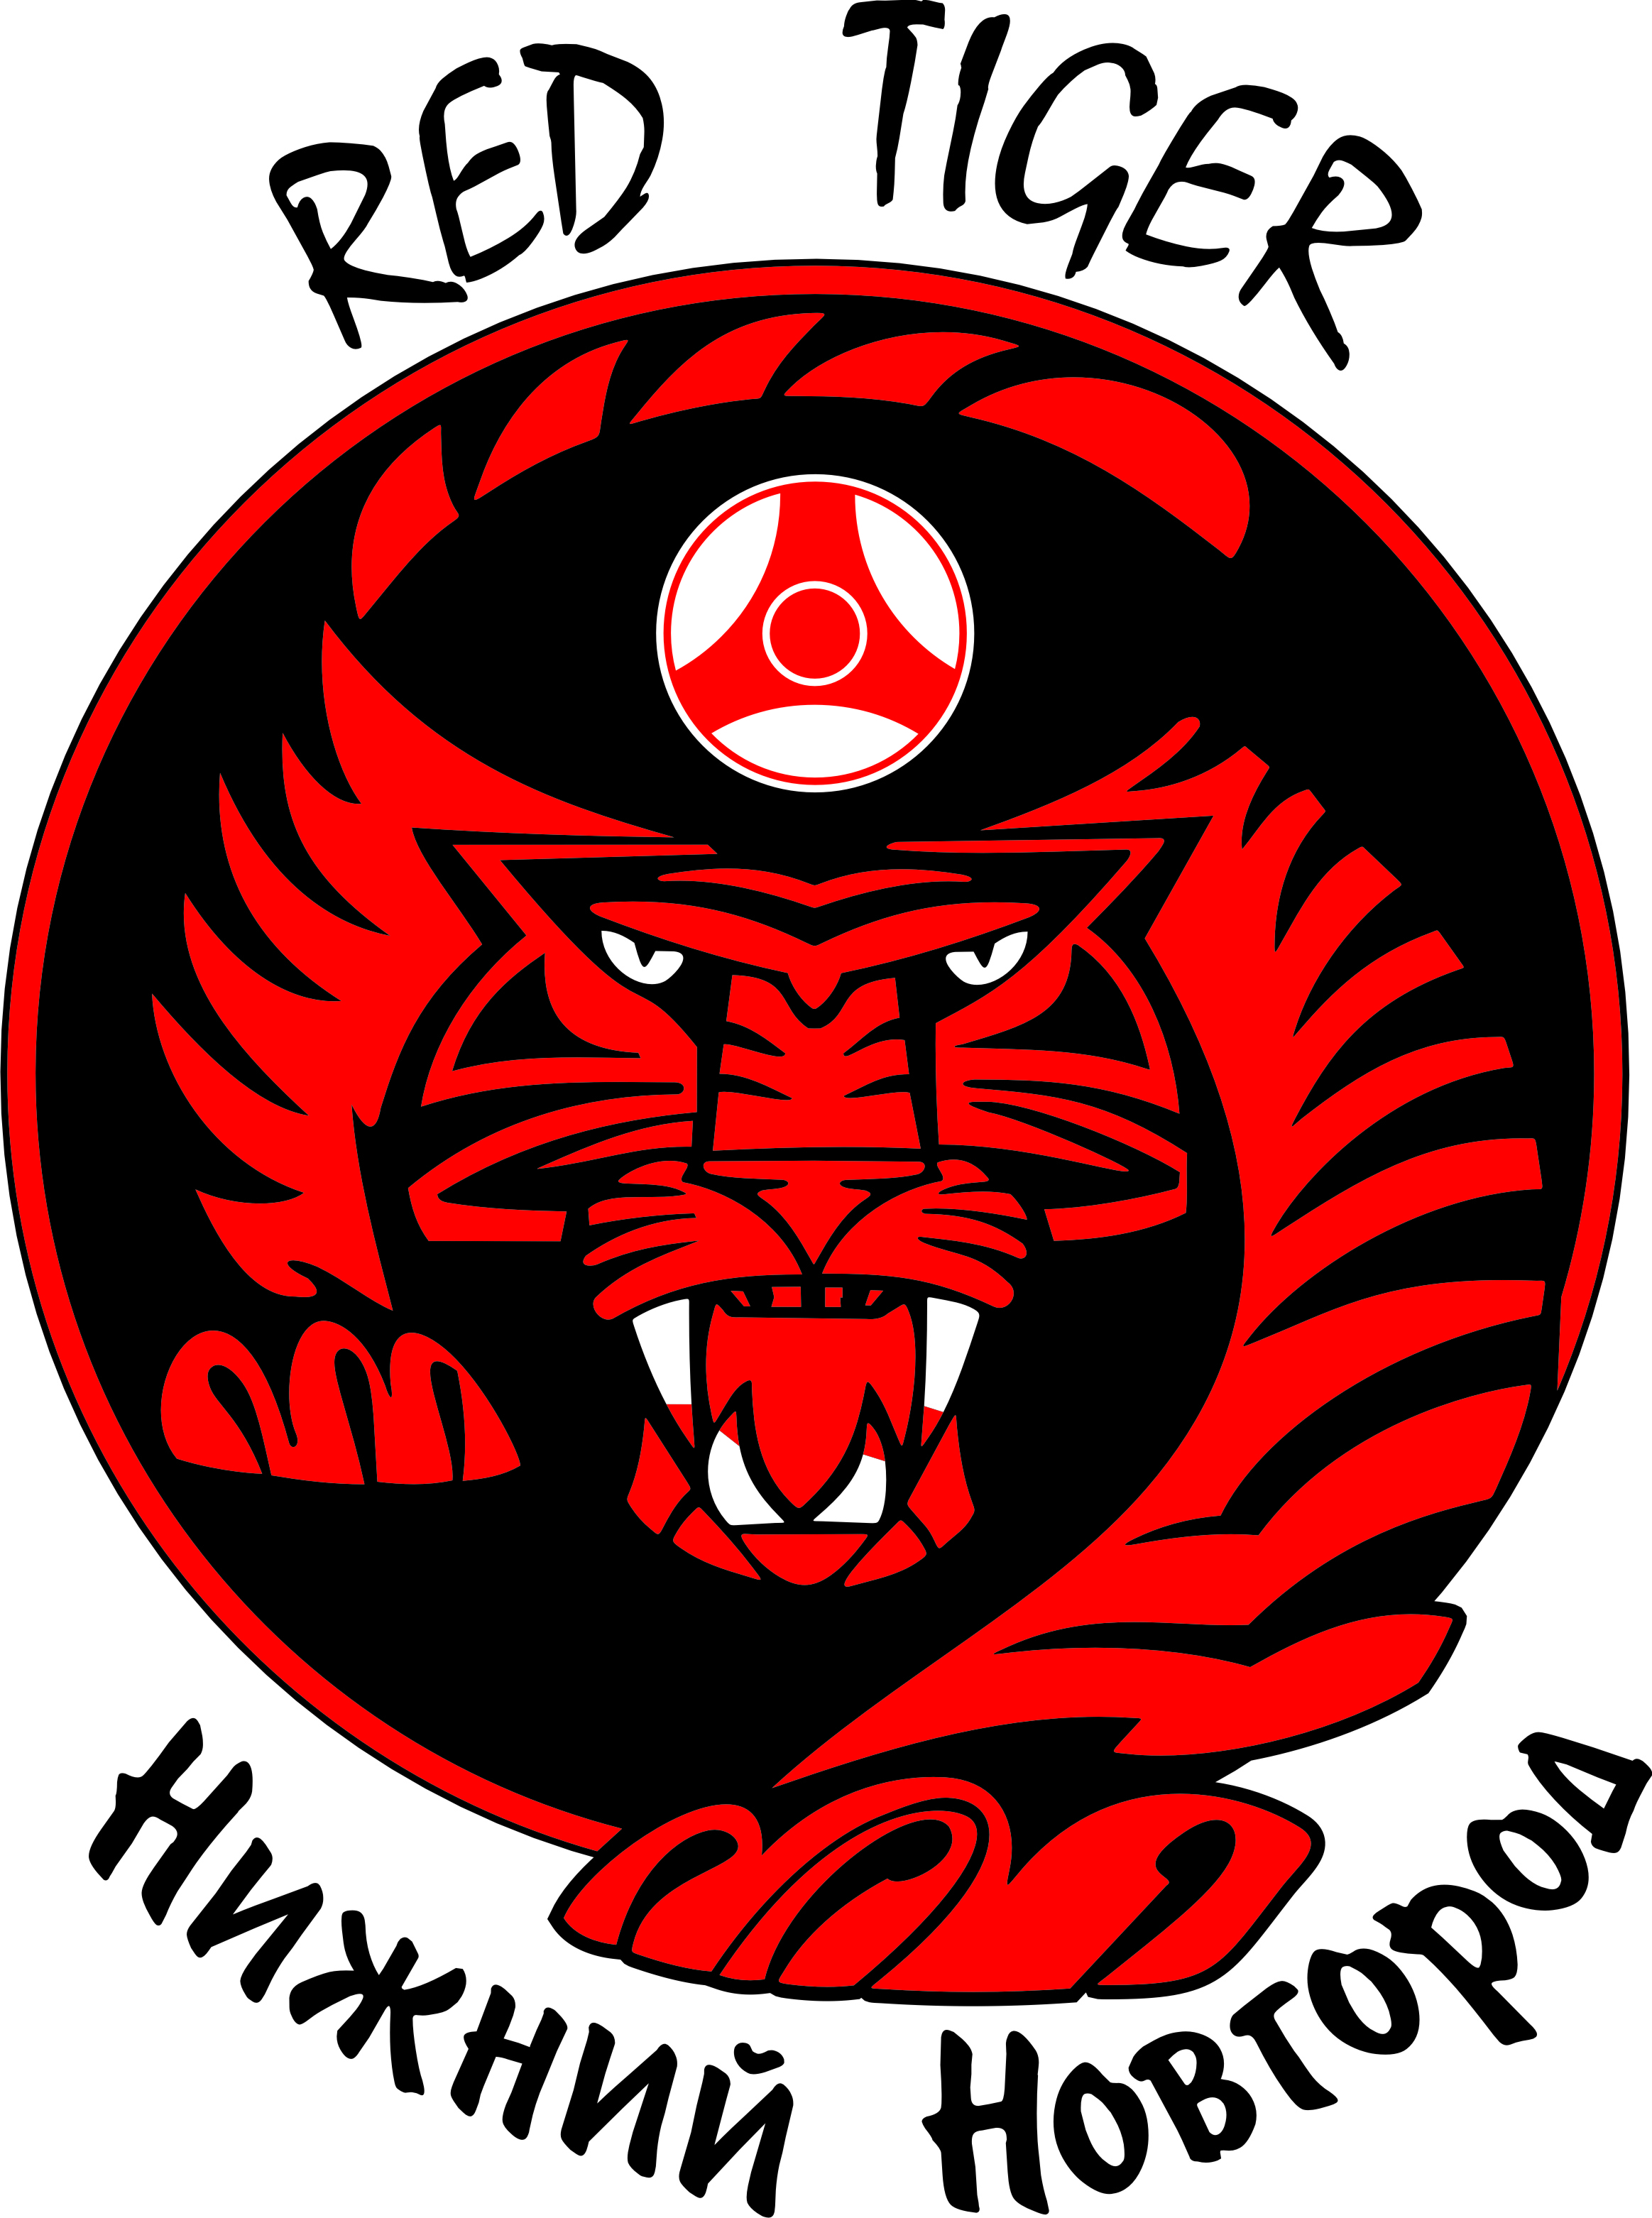 Ред тайгер. Красный тигр. Красный тигр Нижний Новгород. Красный тигр каратэ. Красный тигр Химки.